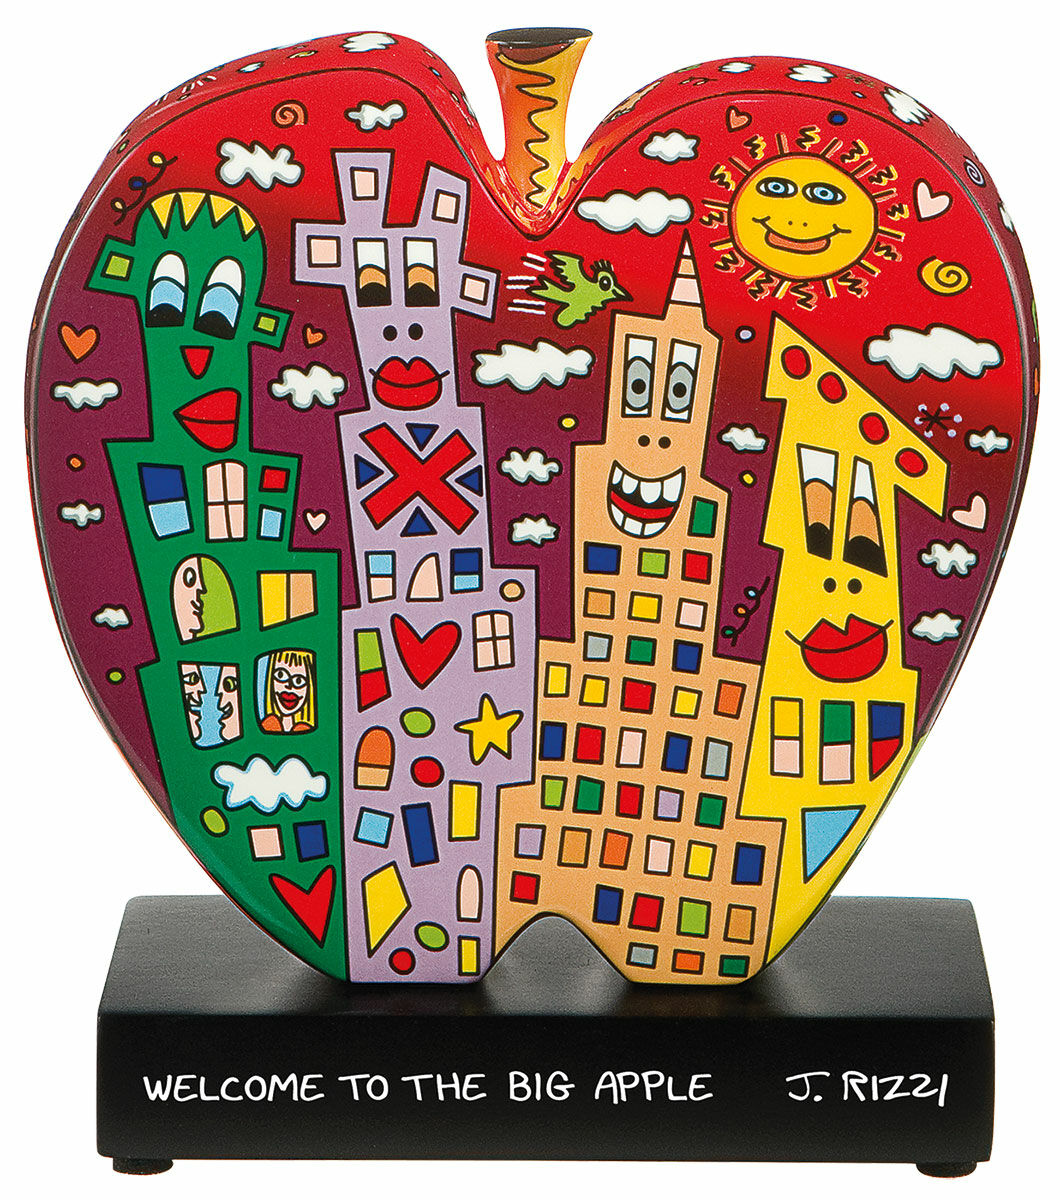 Objet en porcelaine "Welcome to the big apple" (Bienvenue dans la grande pomme) von James Rizzi